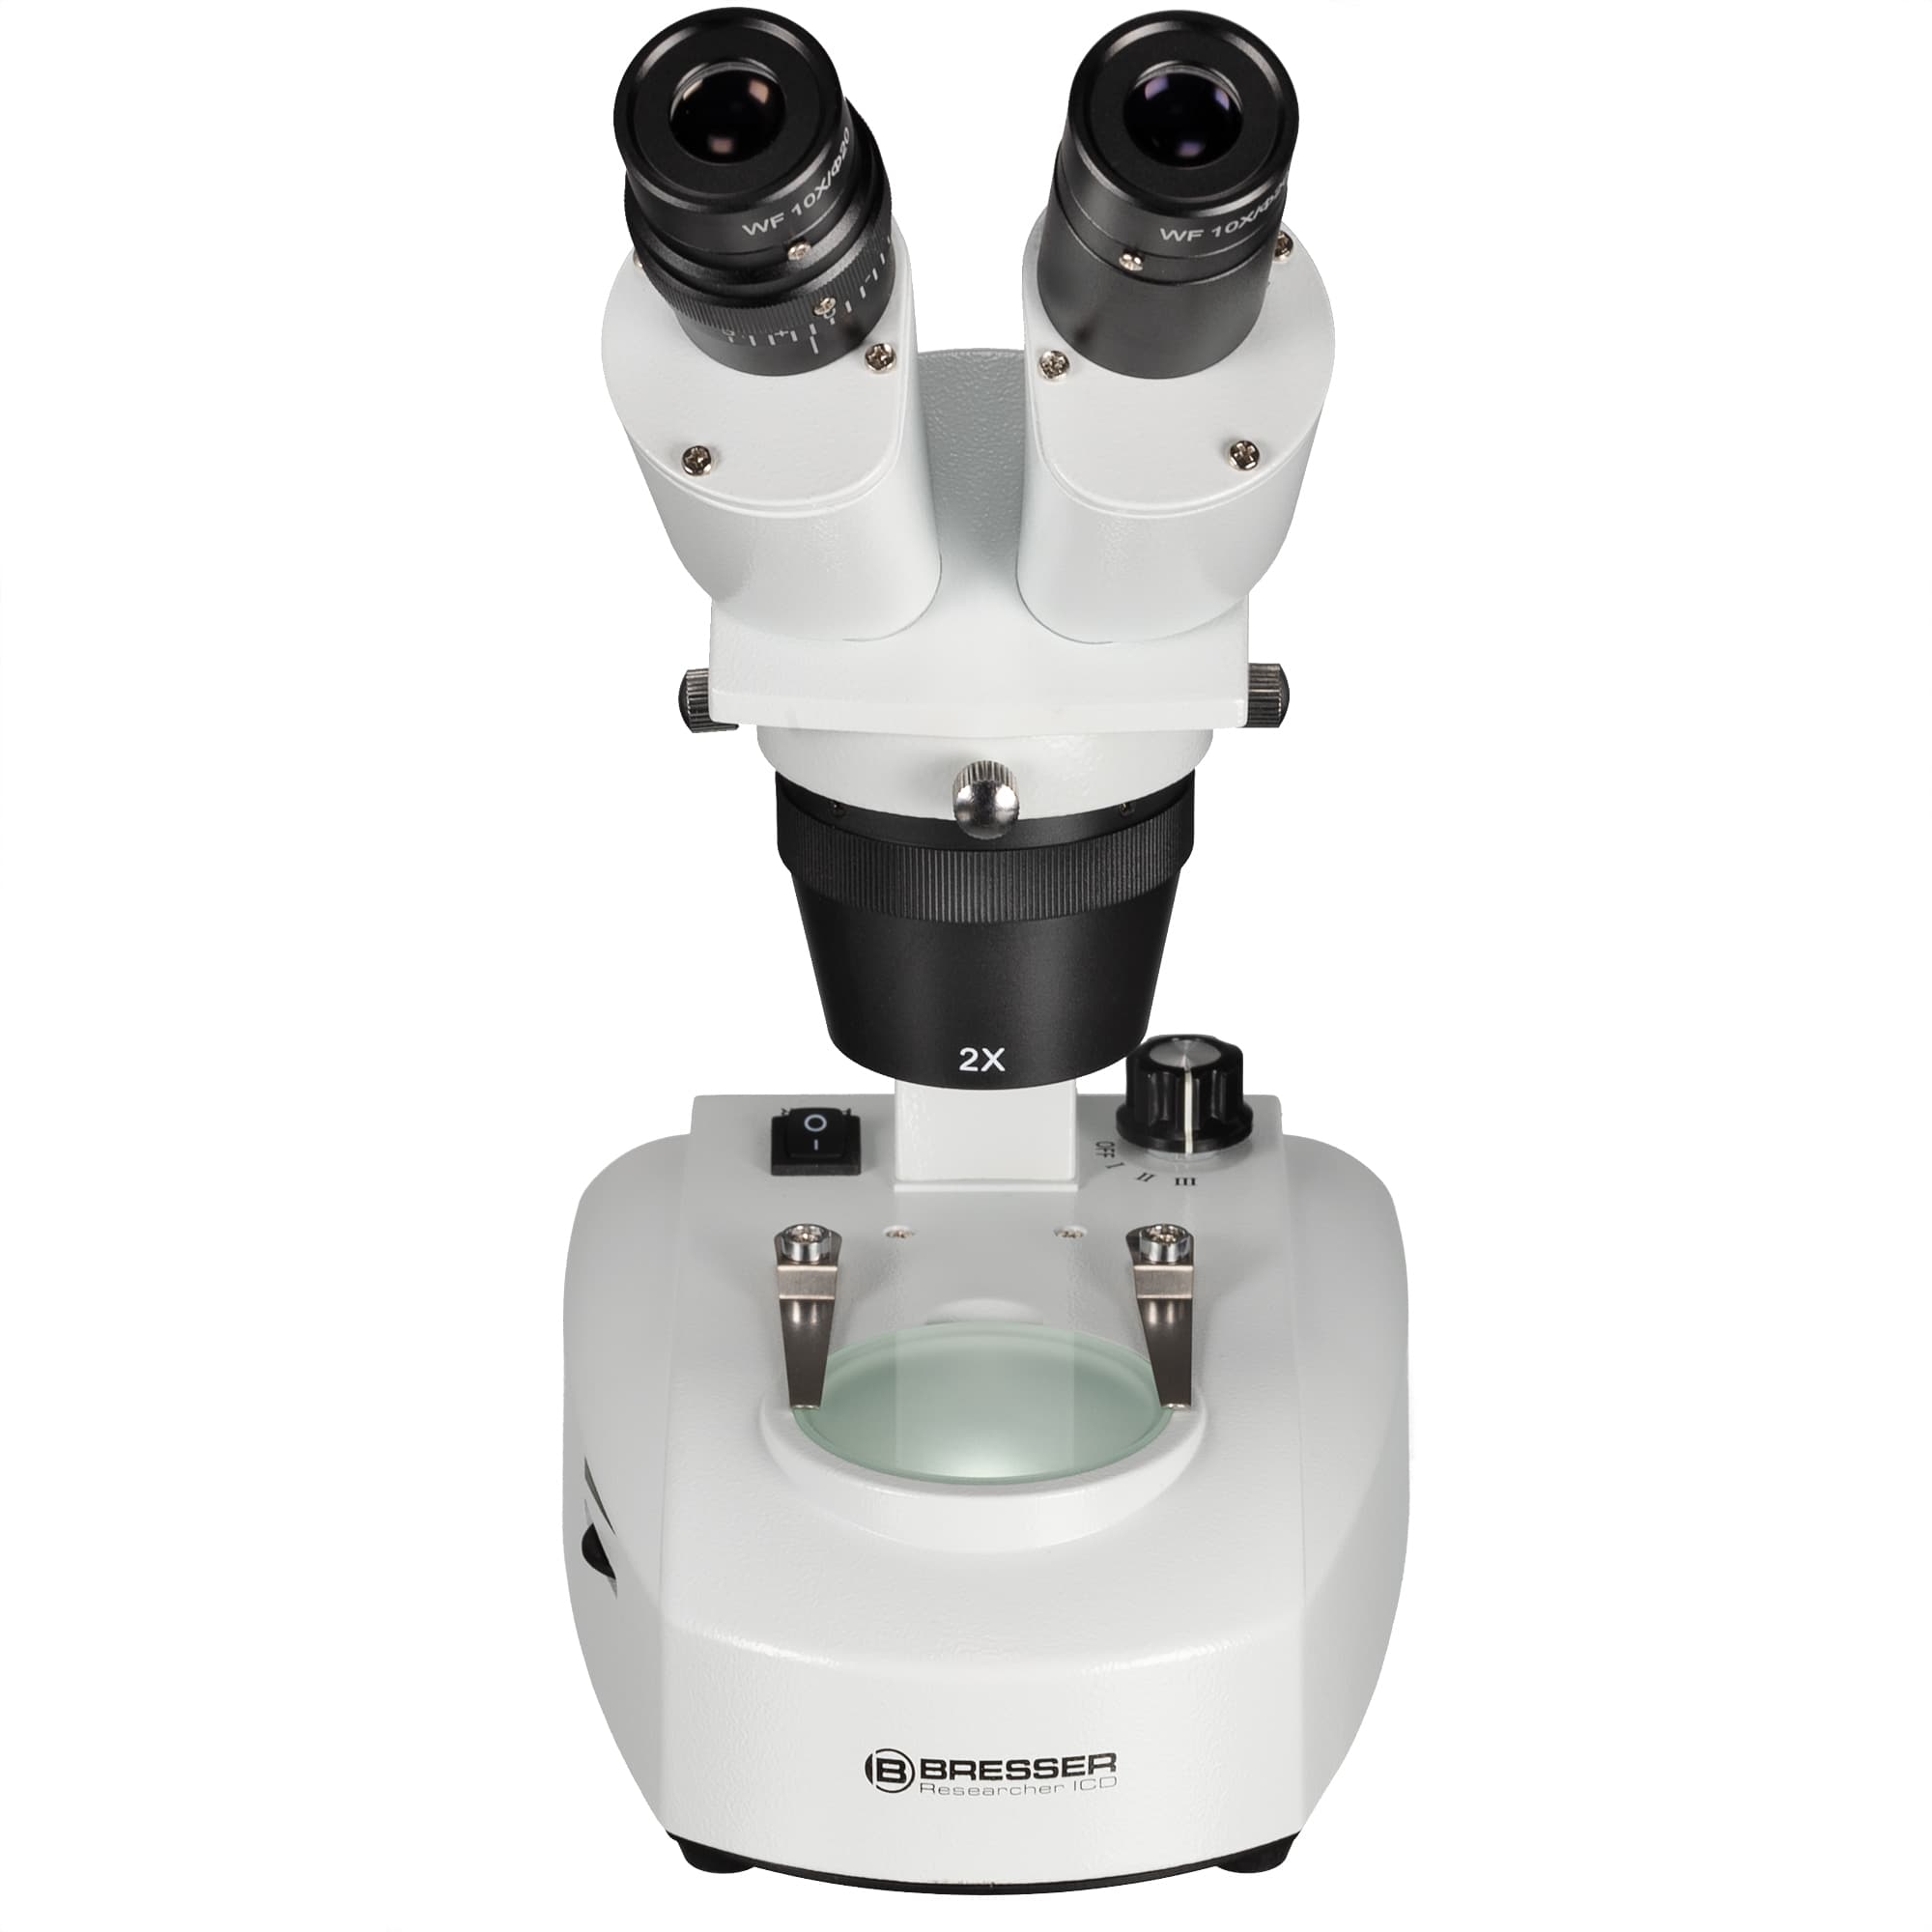   Stereomicroscopio di qualità a luce trasmessa e incidente con testa binoculare rotante a 360°  